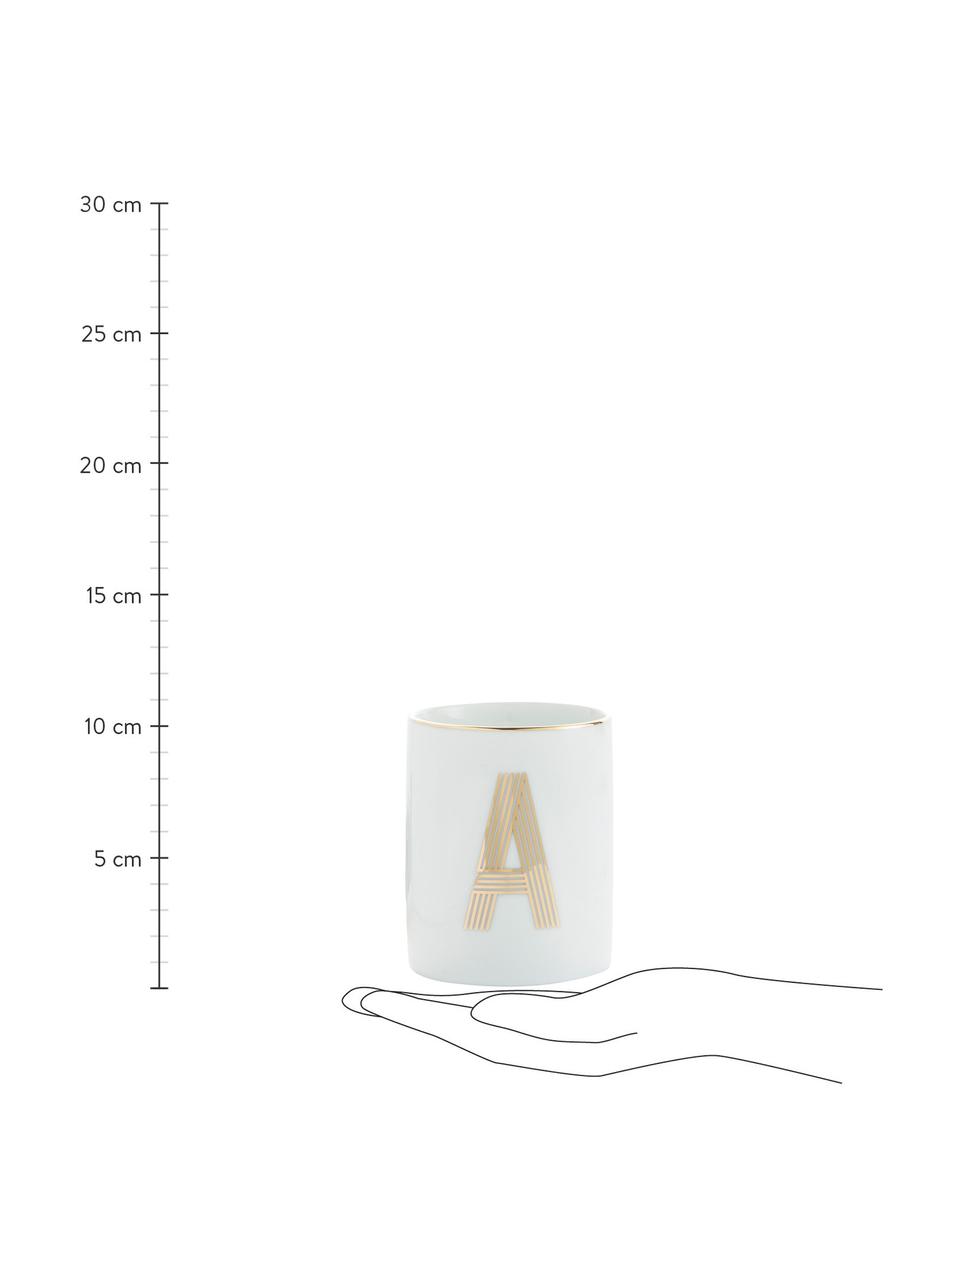 Porcelánový pohárek s písmenem Yours (varianty od A do Z), Porcelán, Bílá, zlatá, Pohárek P, 300 ml